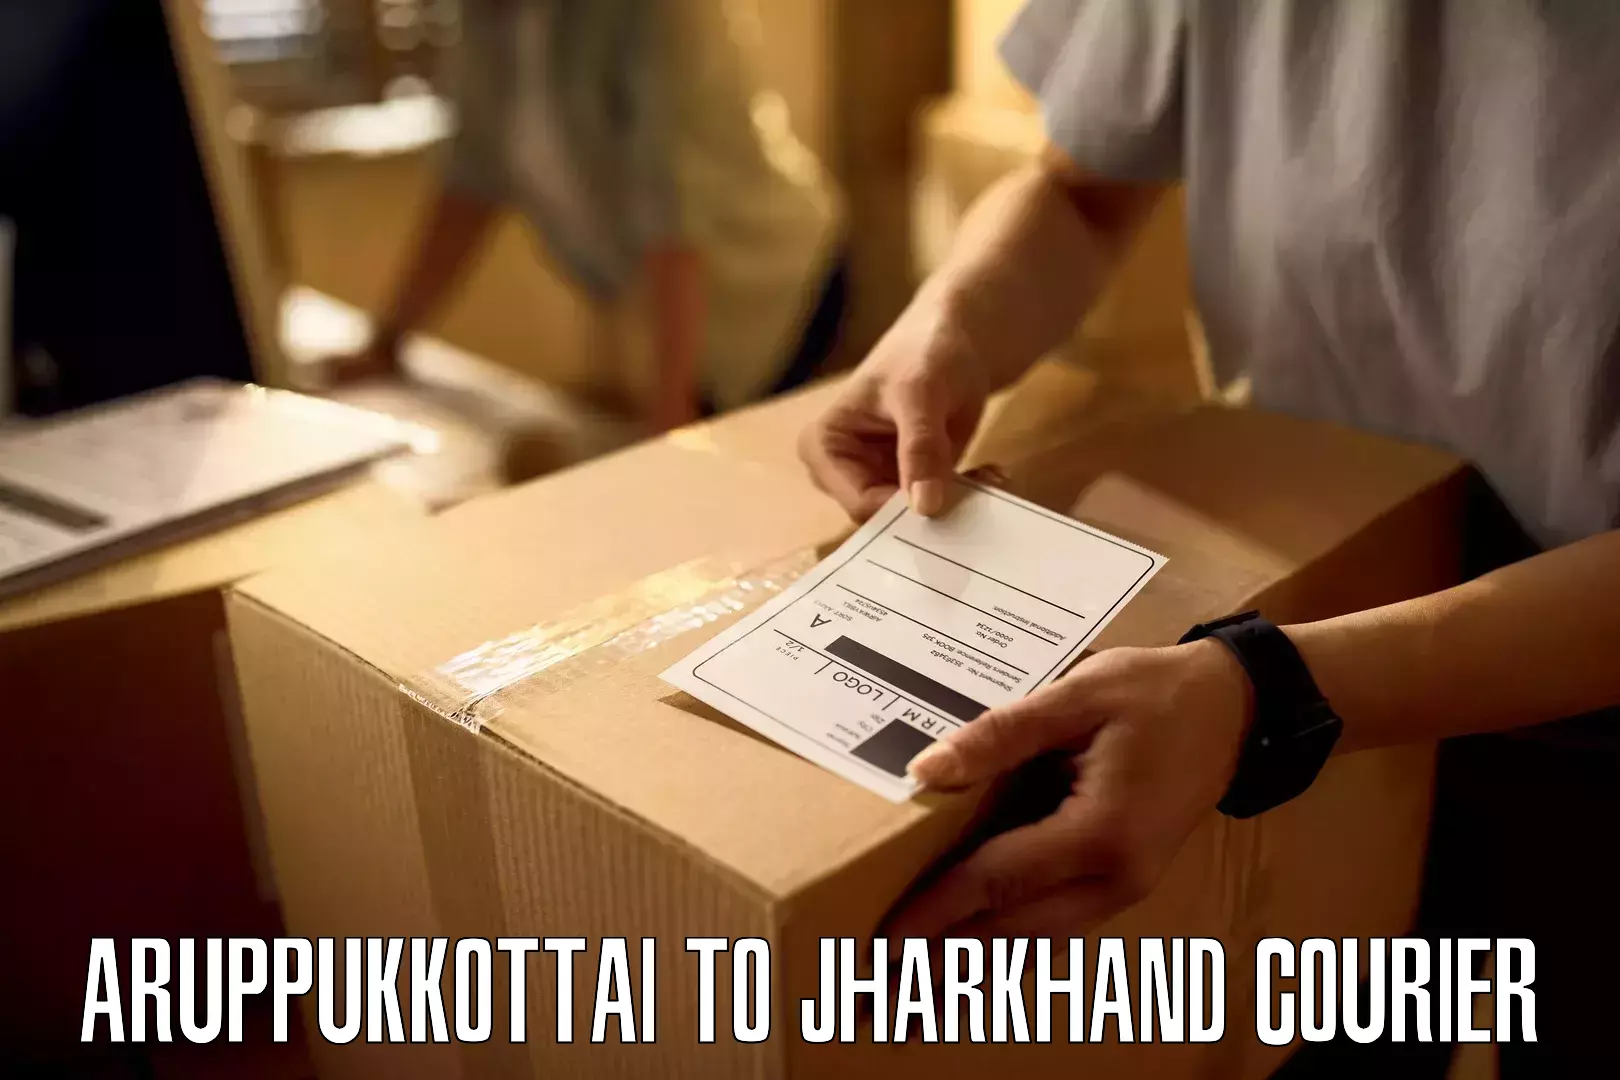 Smart parcel solutions Aruppukkottai to IIIT Ranchi